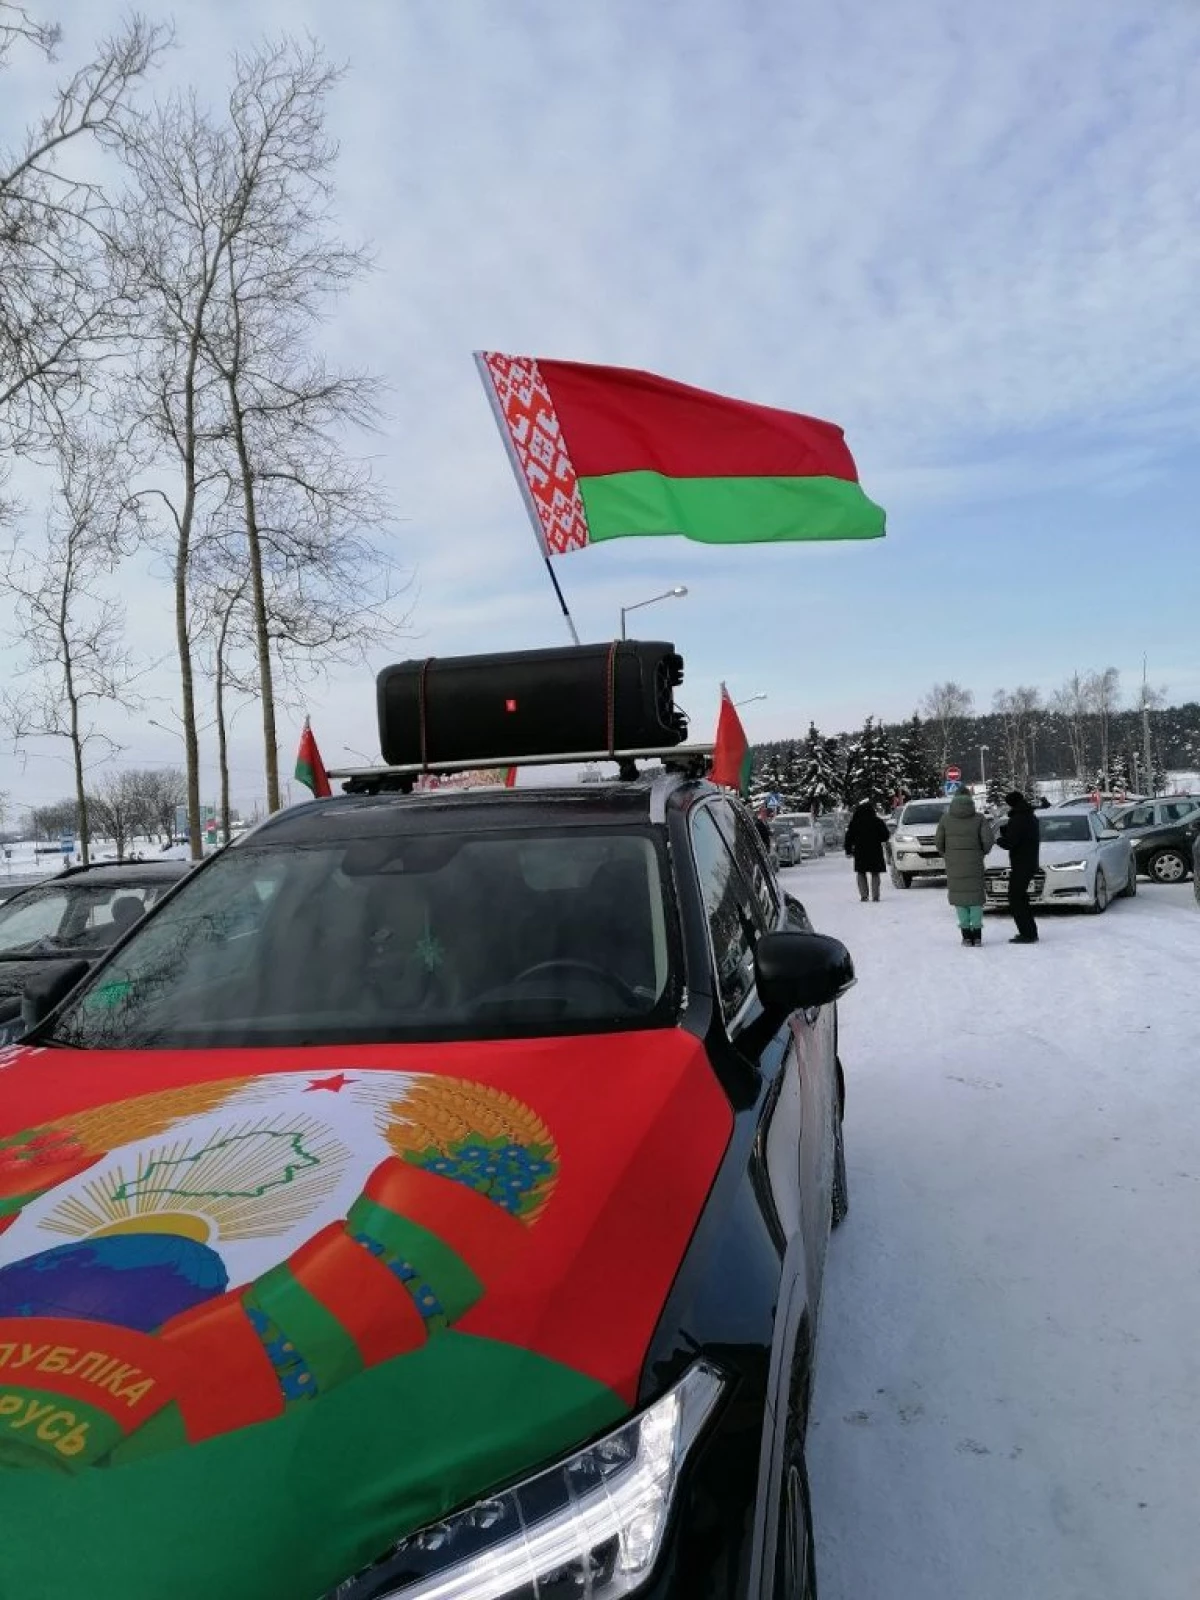 Zonele au mers pe jos, LIQUI MOLY a refuzat să sponsorizeze Cupa Mondială în Belarus: Cronica de duminică înghețată 675_9